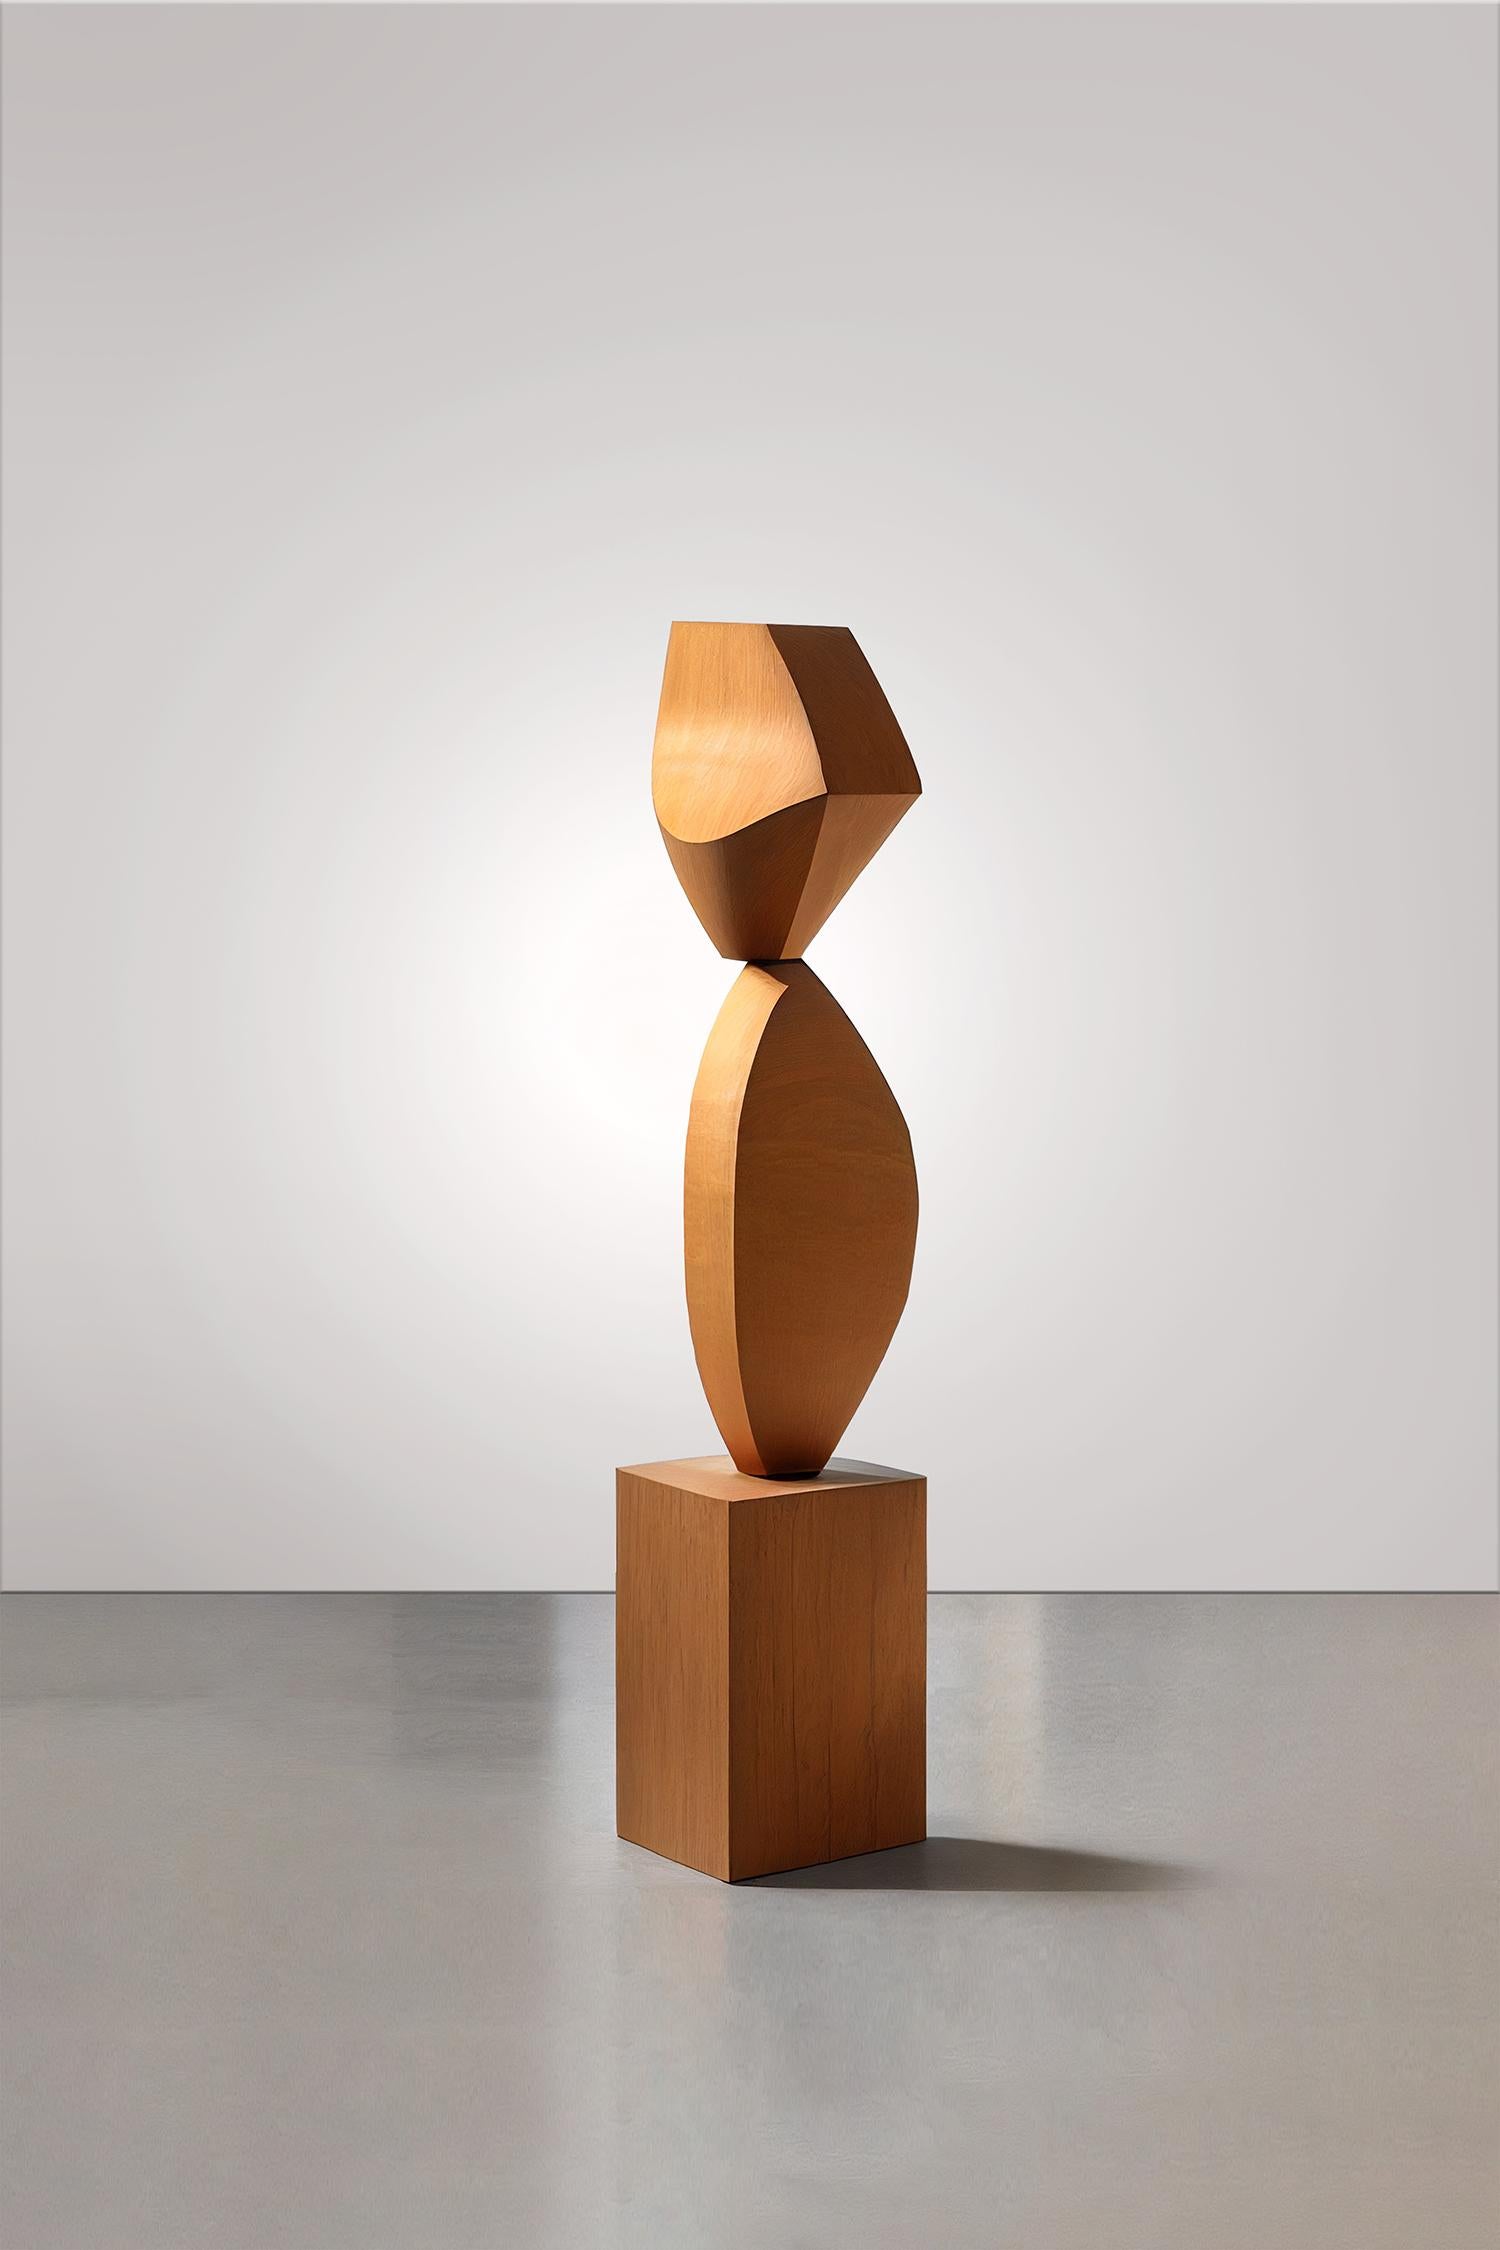 Cette sculpture monolithique, conçue par le talentueux artiste Joel Escalona, est un exemple impressionnant de beauté artisanale. Fabriquée à la main et à l'aide d'une machine numérique, la sculpture se dresse comme un monument au savoir-faire de